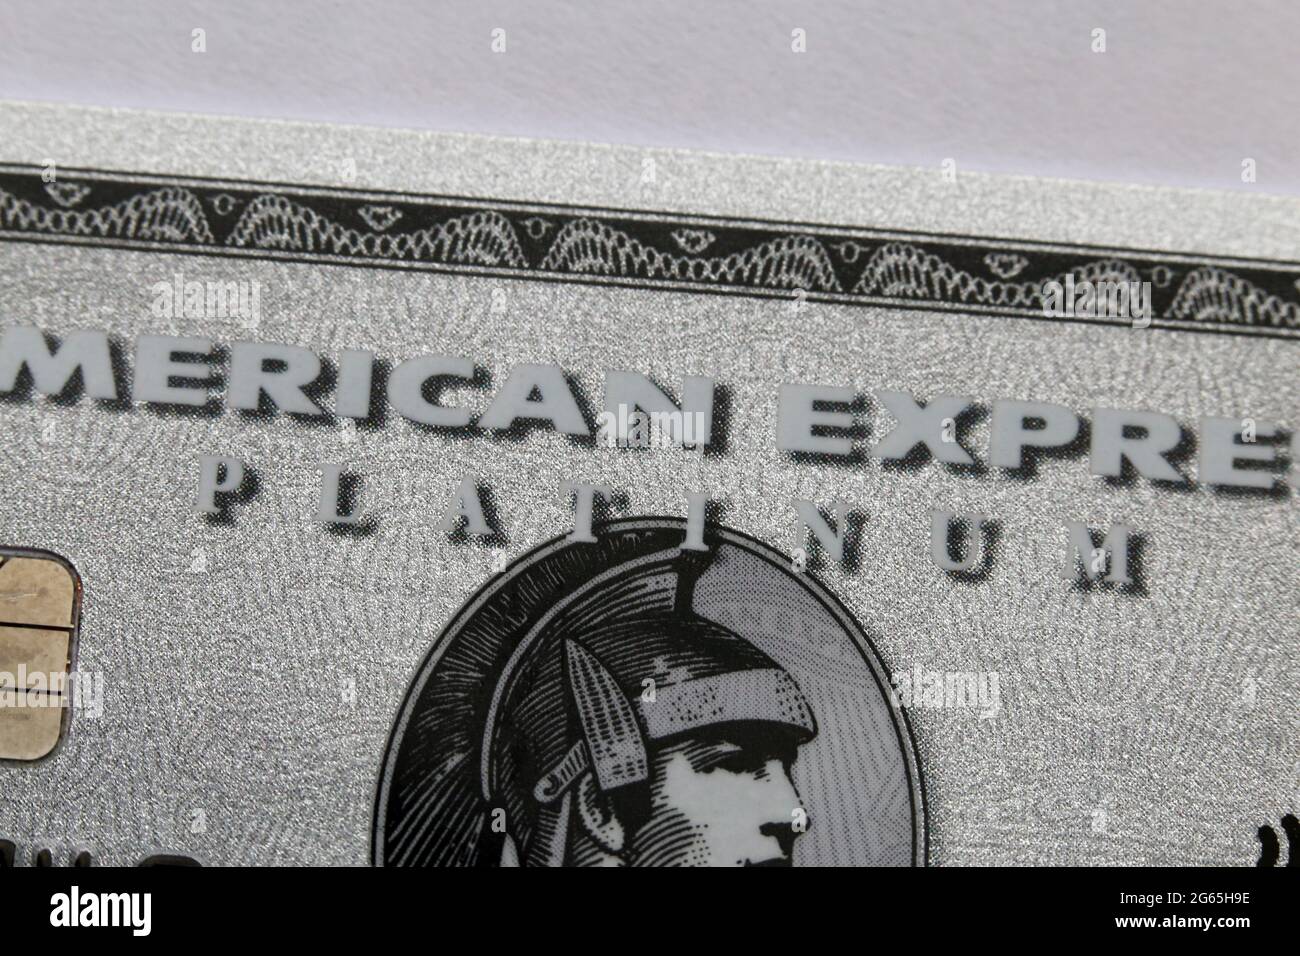 Carte American Express Platinum (Amex Platinum) en gros plan - il s'agit de l'ancienne carte Amex Platinum en plastique. Avril 2020, Espoo, Finlande. Banque D'Images